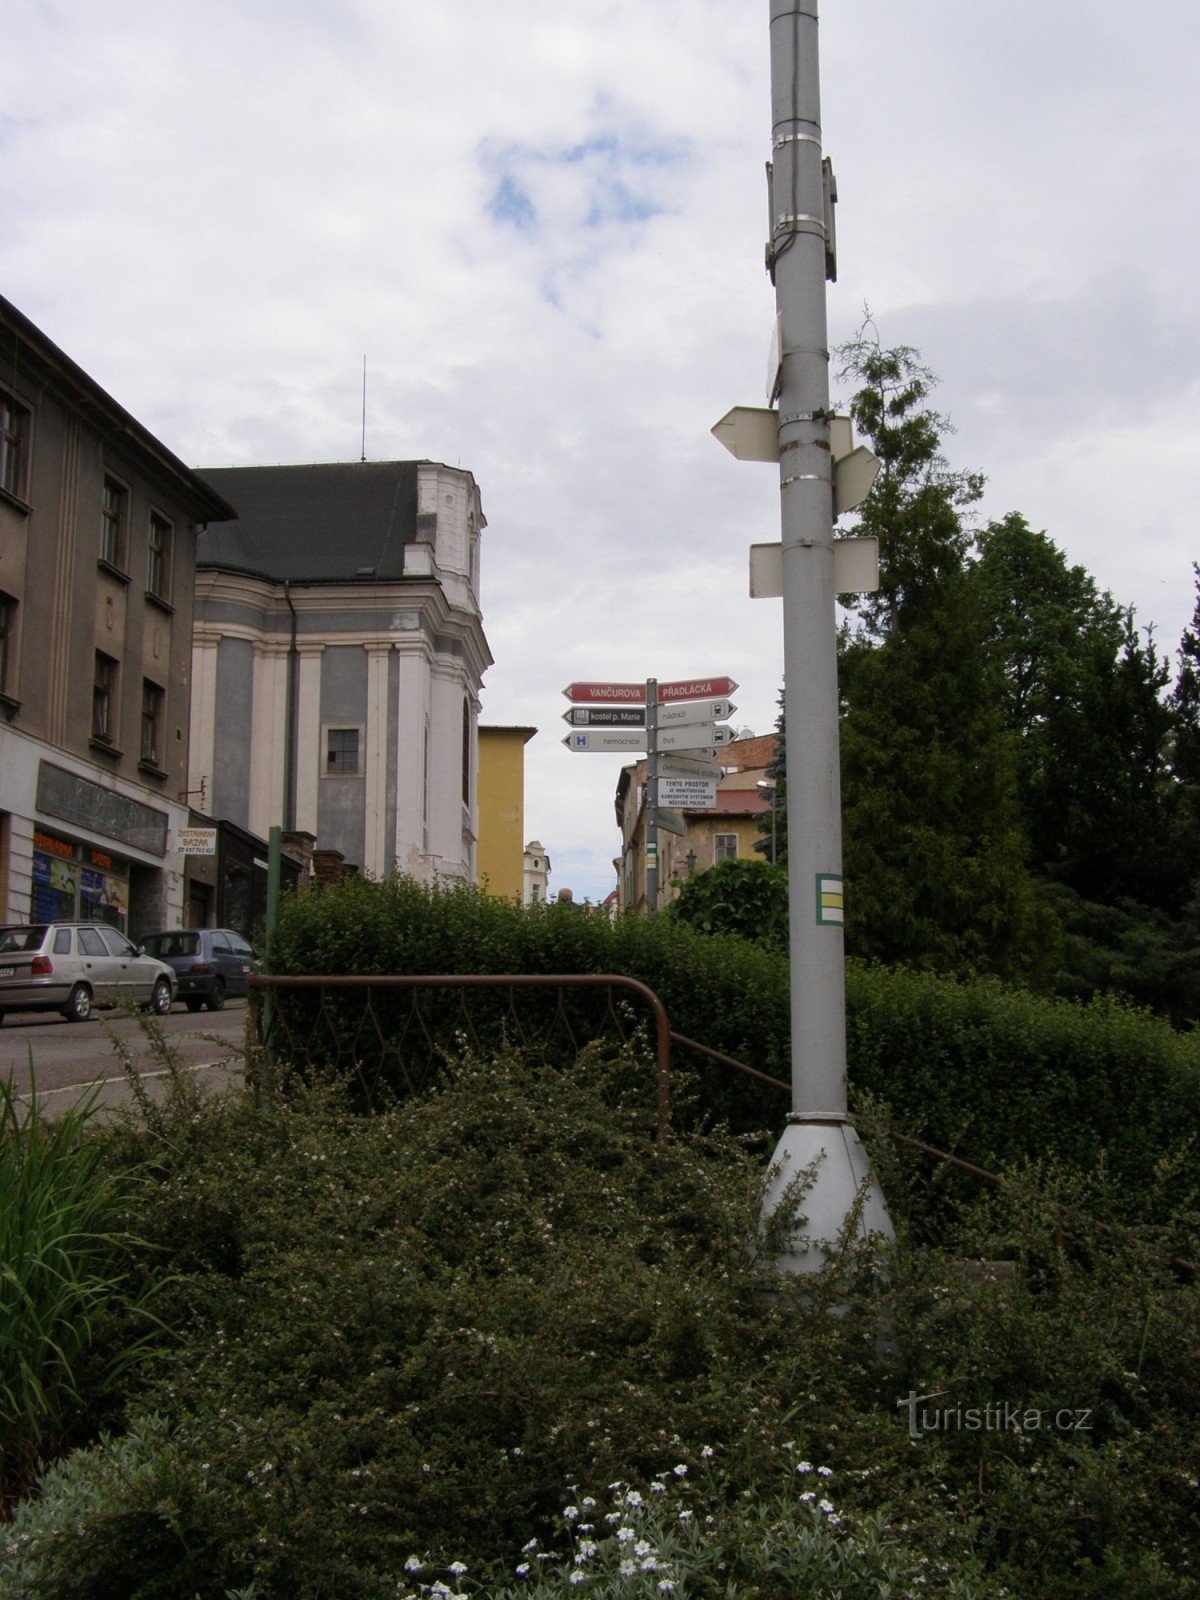 観光交差点ブロモフ - 広場の下